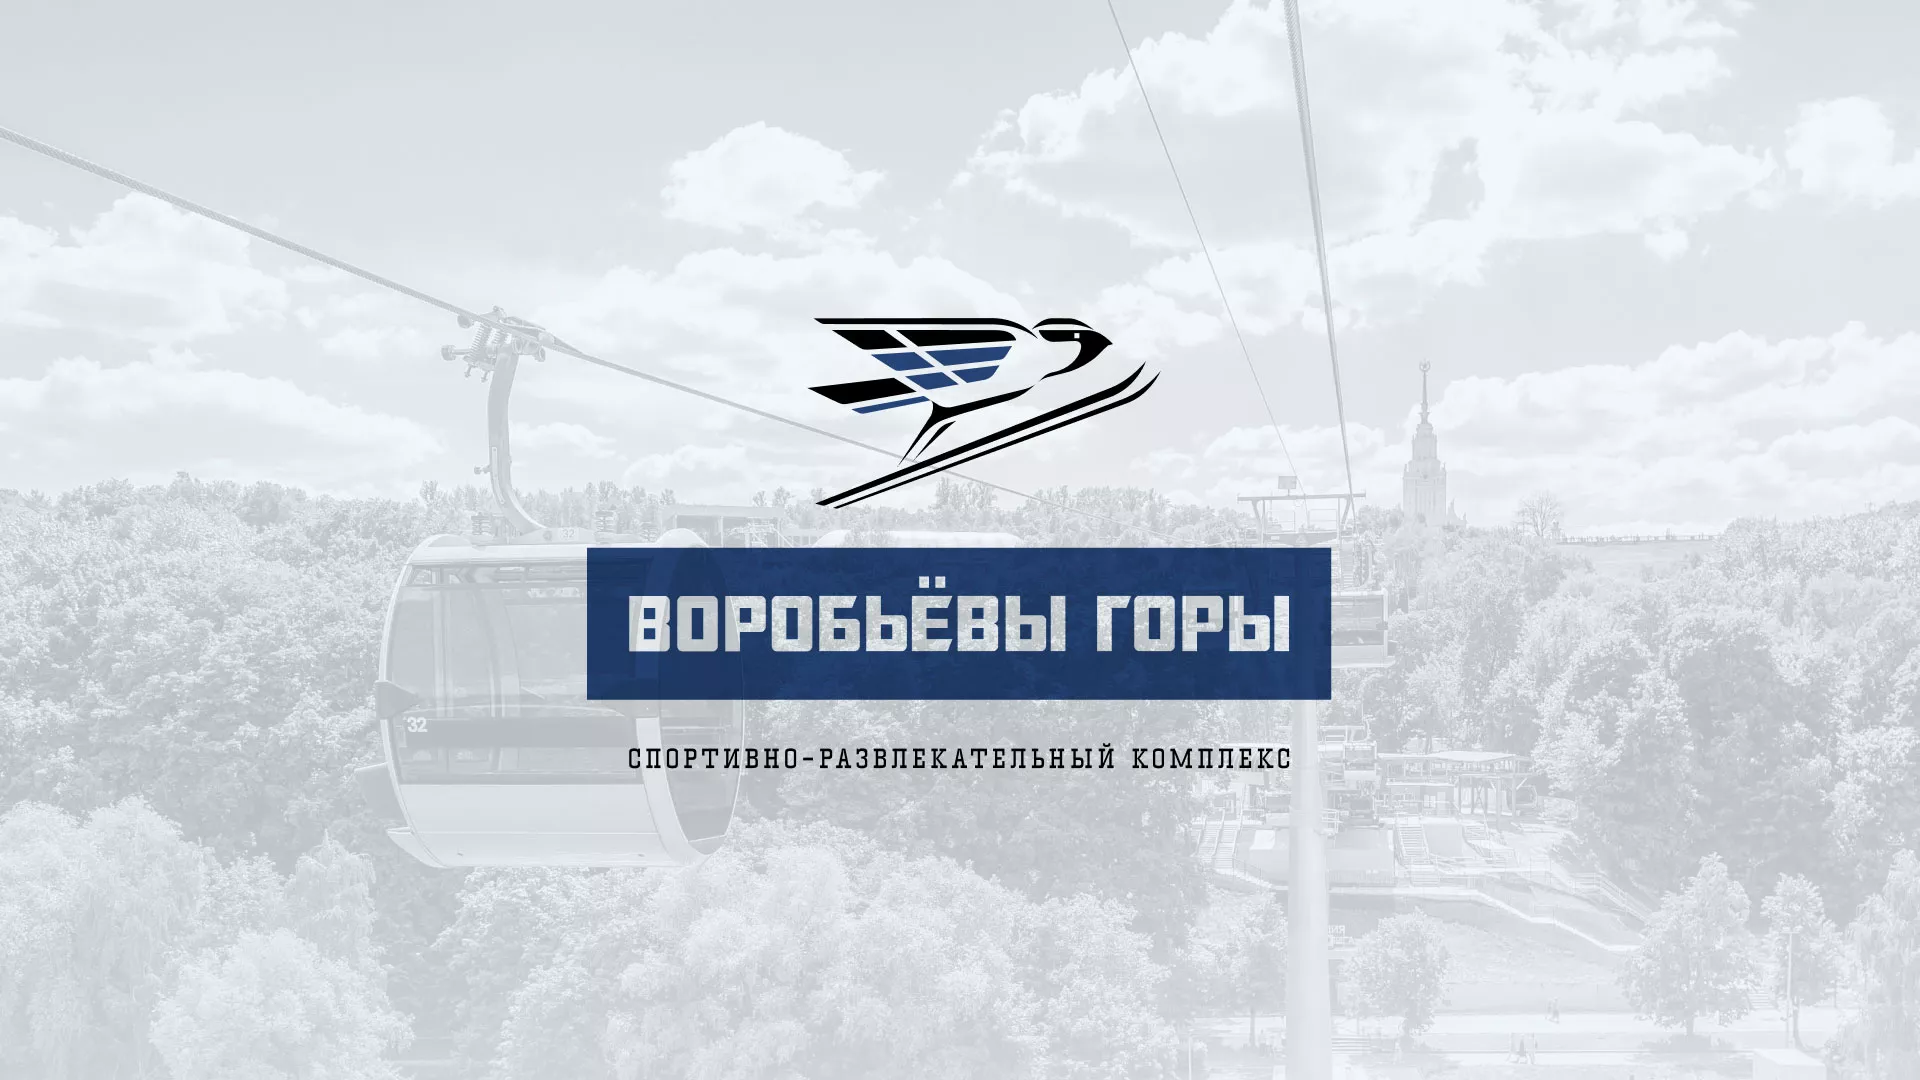 Разработка сайта в Белёве для спортивно-развлекательного комплекса «Воробьёвы горы»